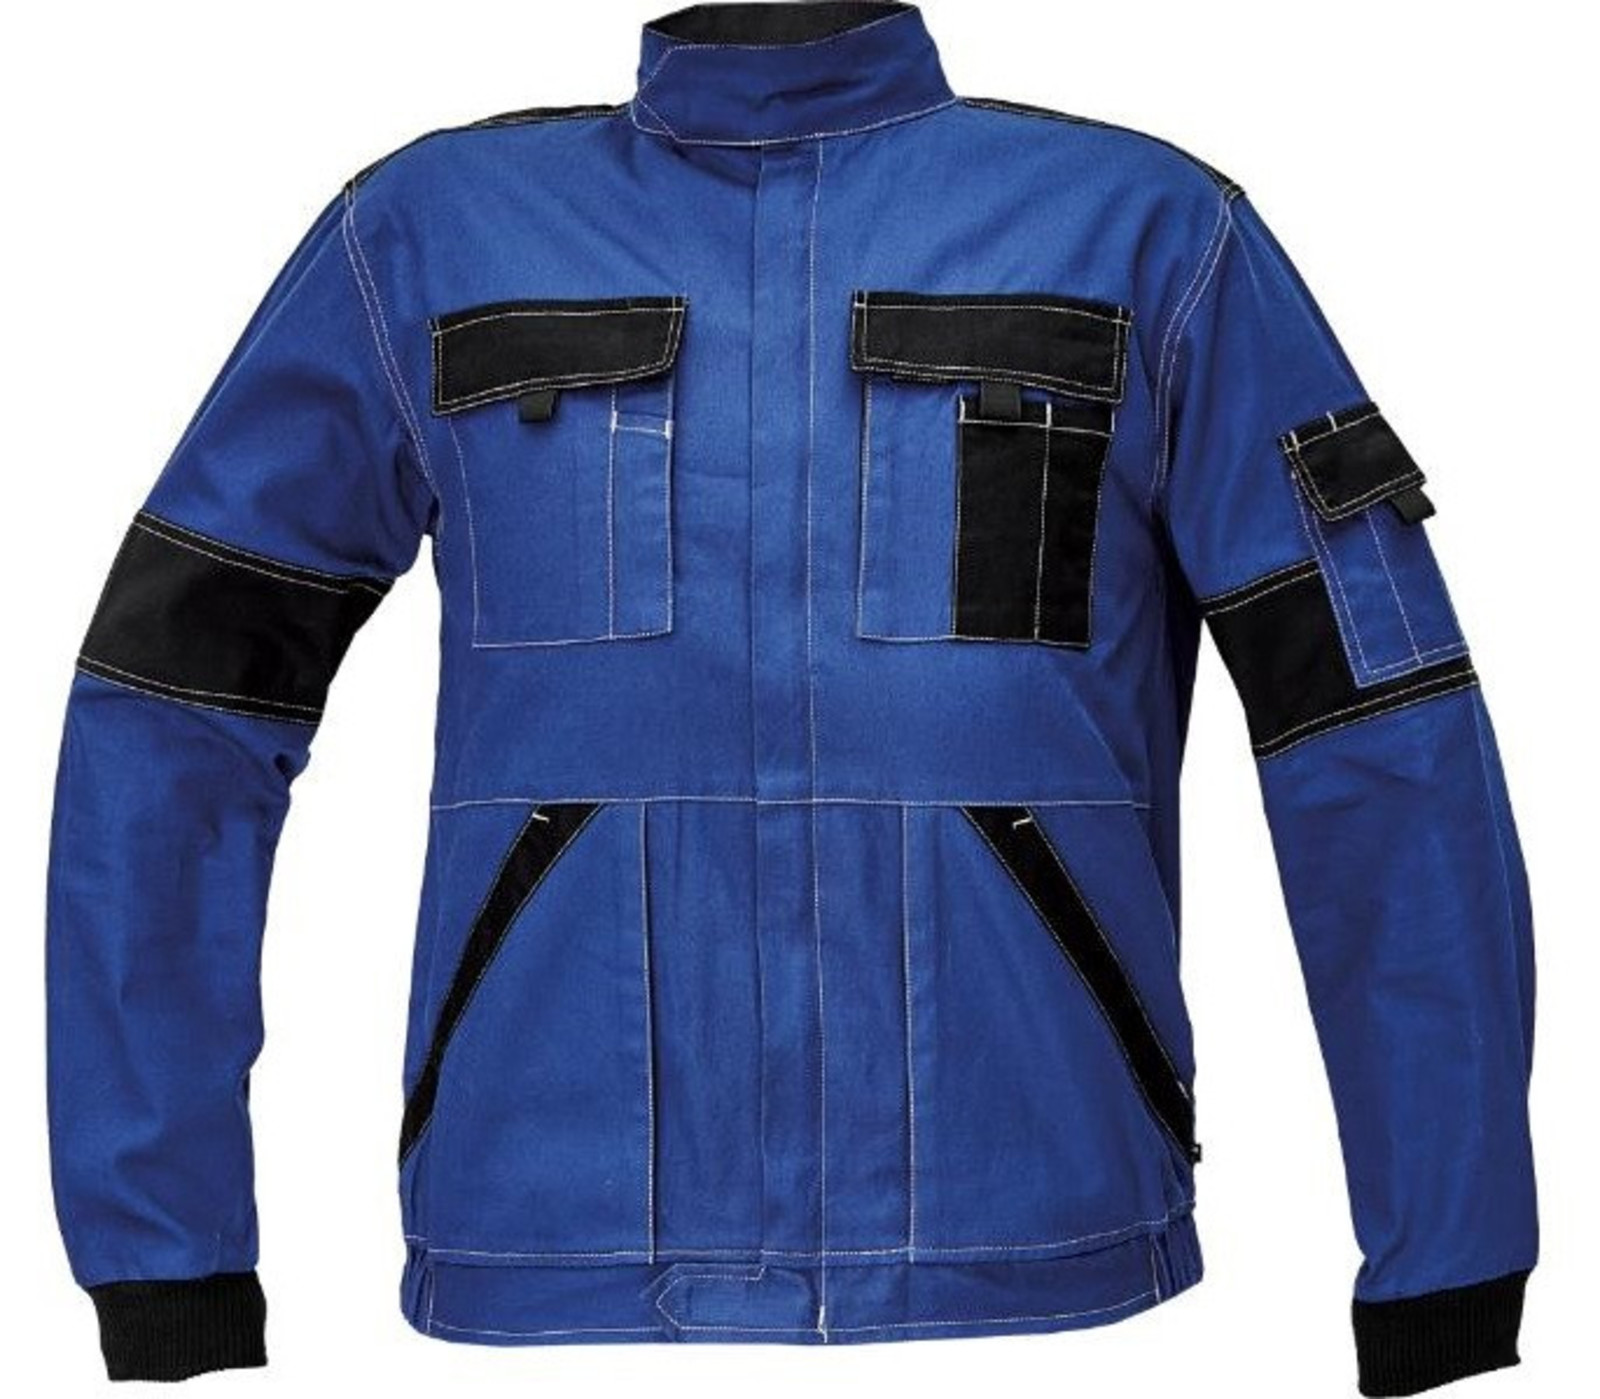 Tenšia bavlnená montérková bunda Max Summer  - veľkosť: 64, farba: modrá/čierna